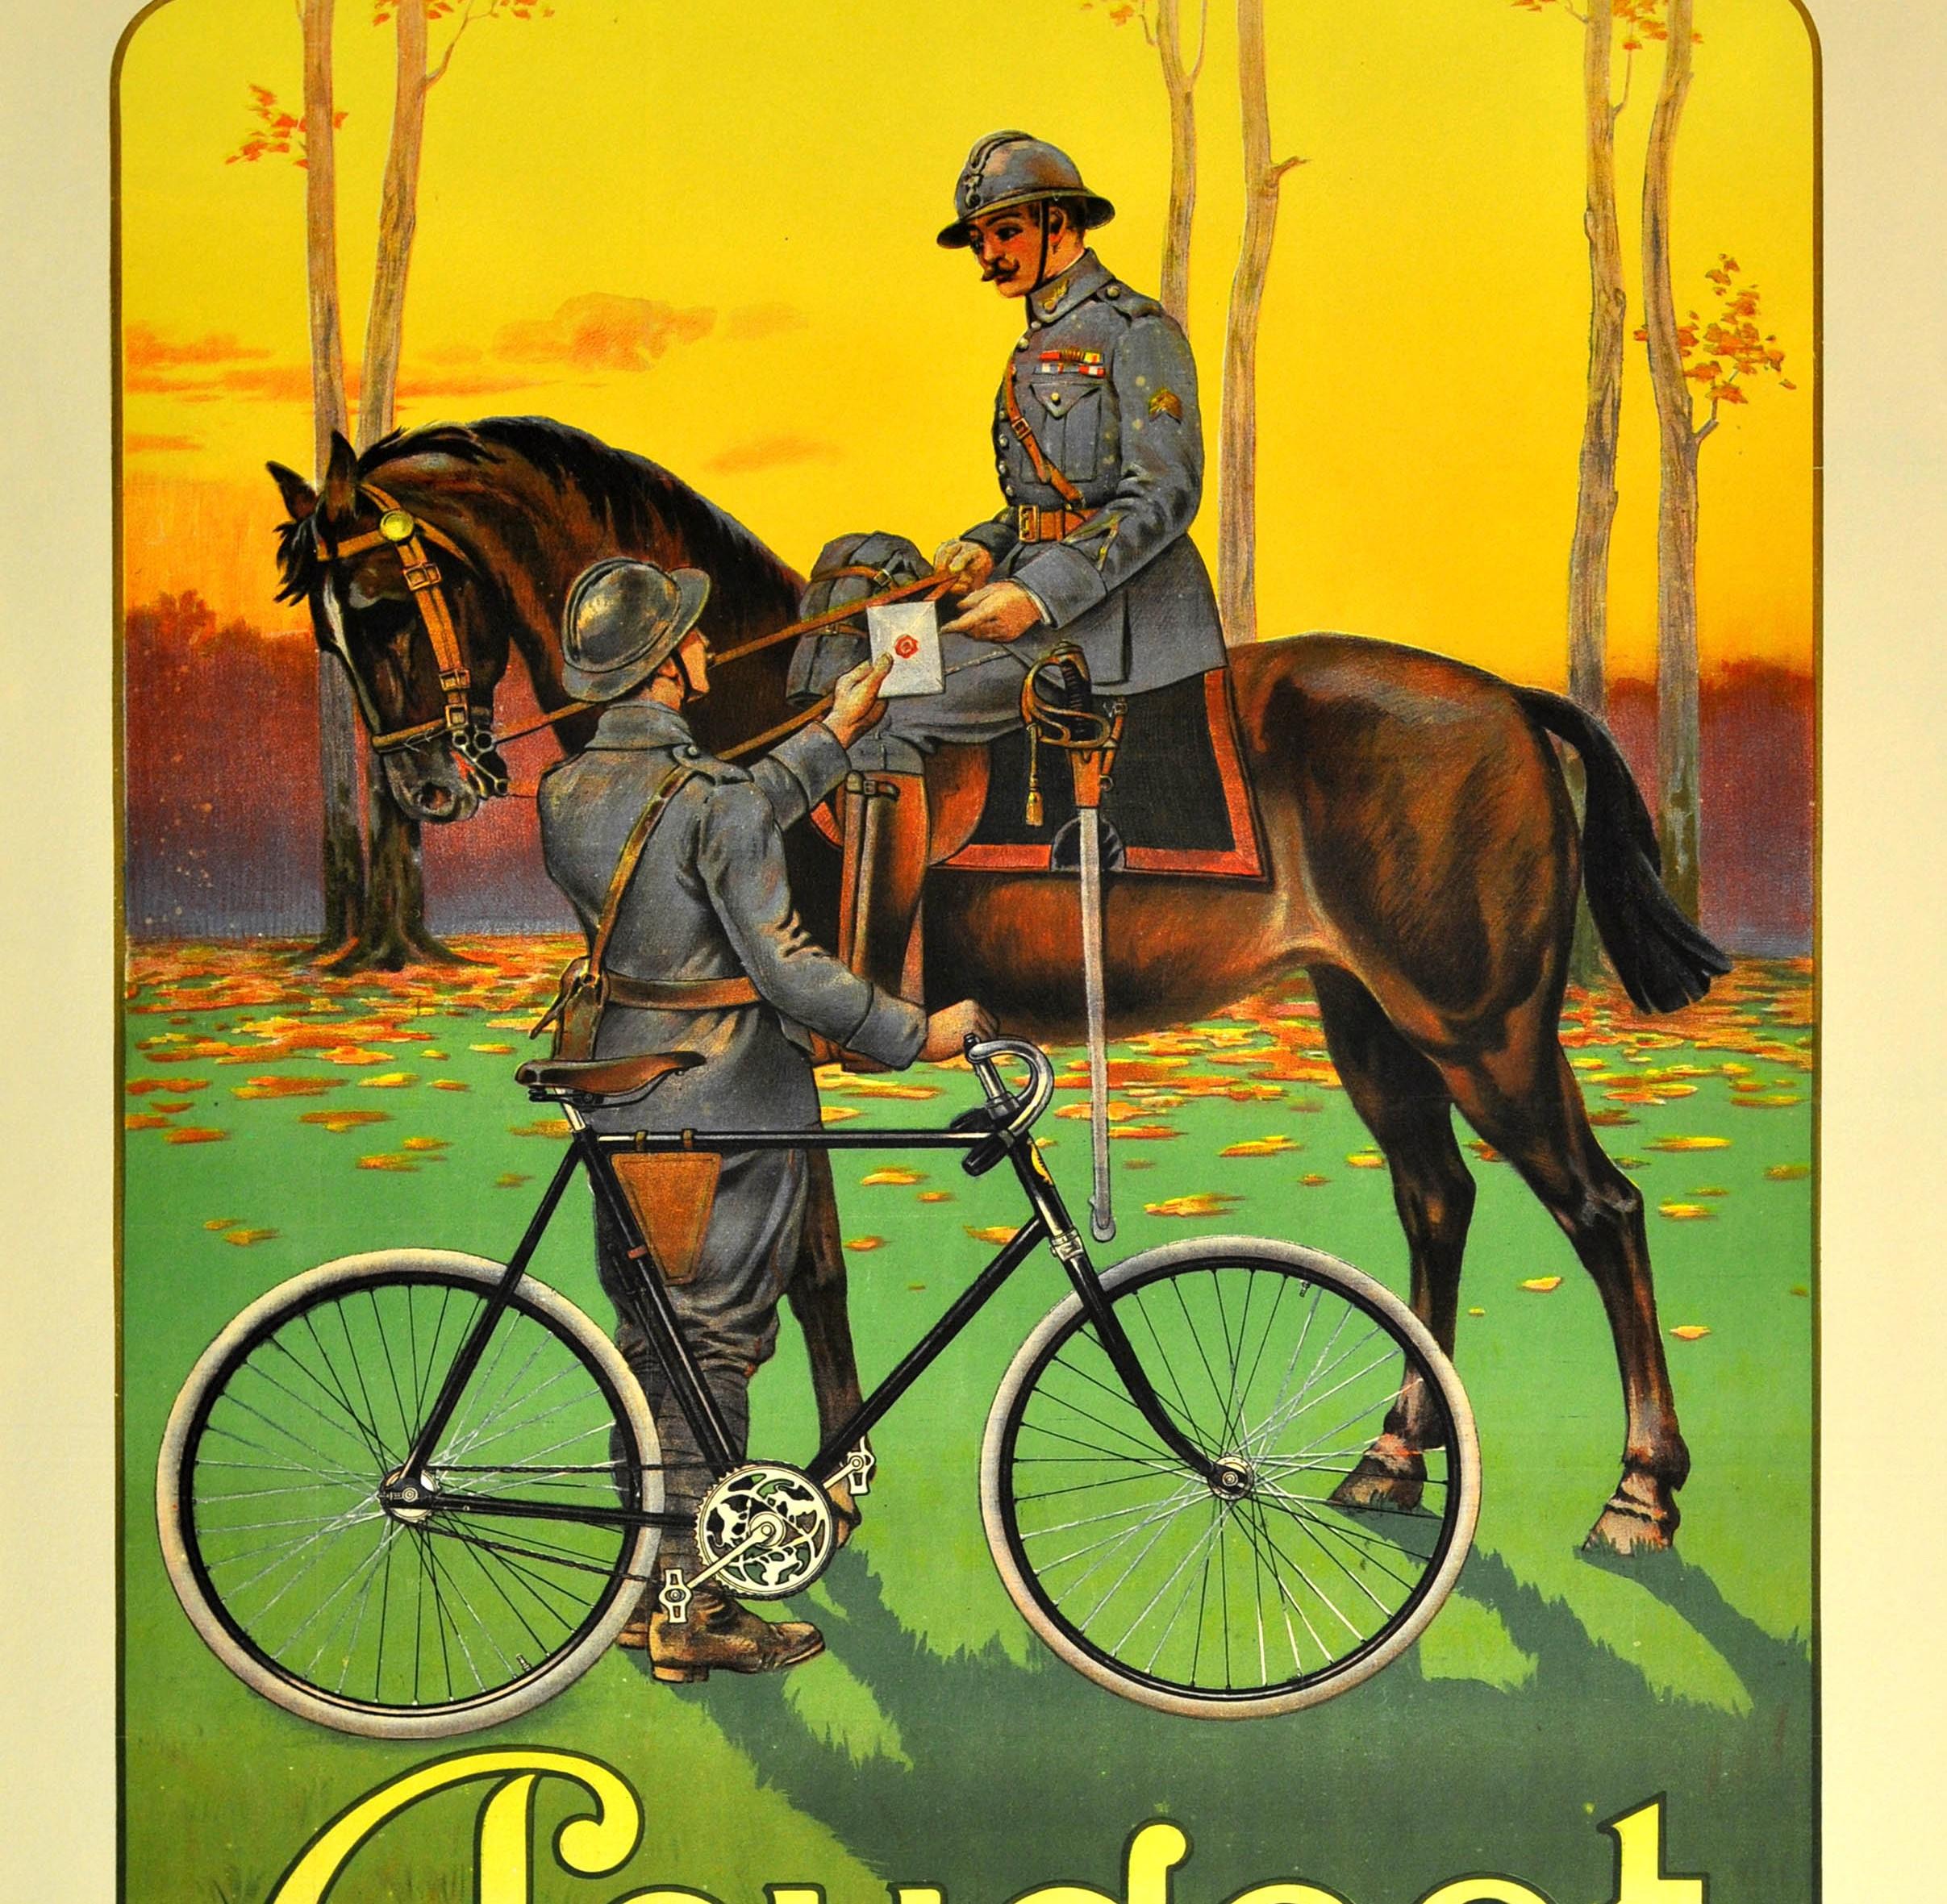 Großes originales antikes Werbeplakat für Peugeot-Fahrräder mit einer großartigen Szene in der Landschaft, die einen Armee-Boten in eleganter Soldatenuniform zeigt, der ein schwarzes Peugeot-Fahrrad (mit einem verzierten Pedal-Zahnrad-Mechanismus)